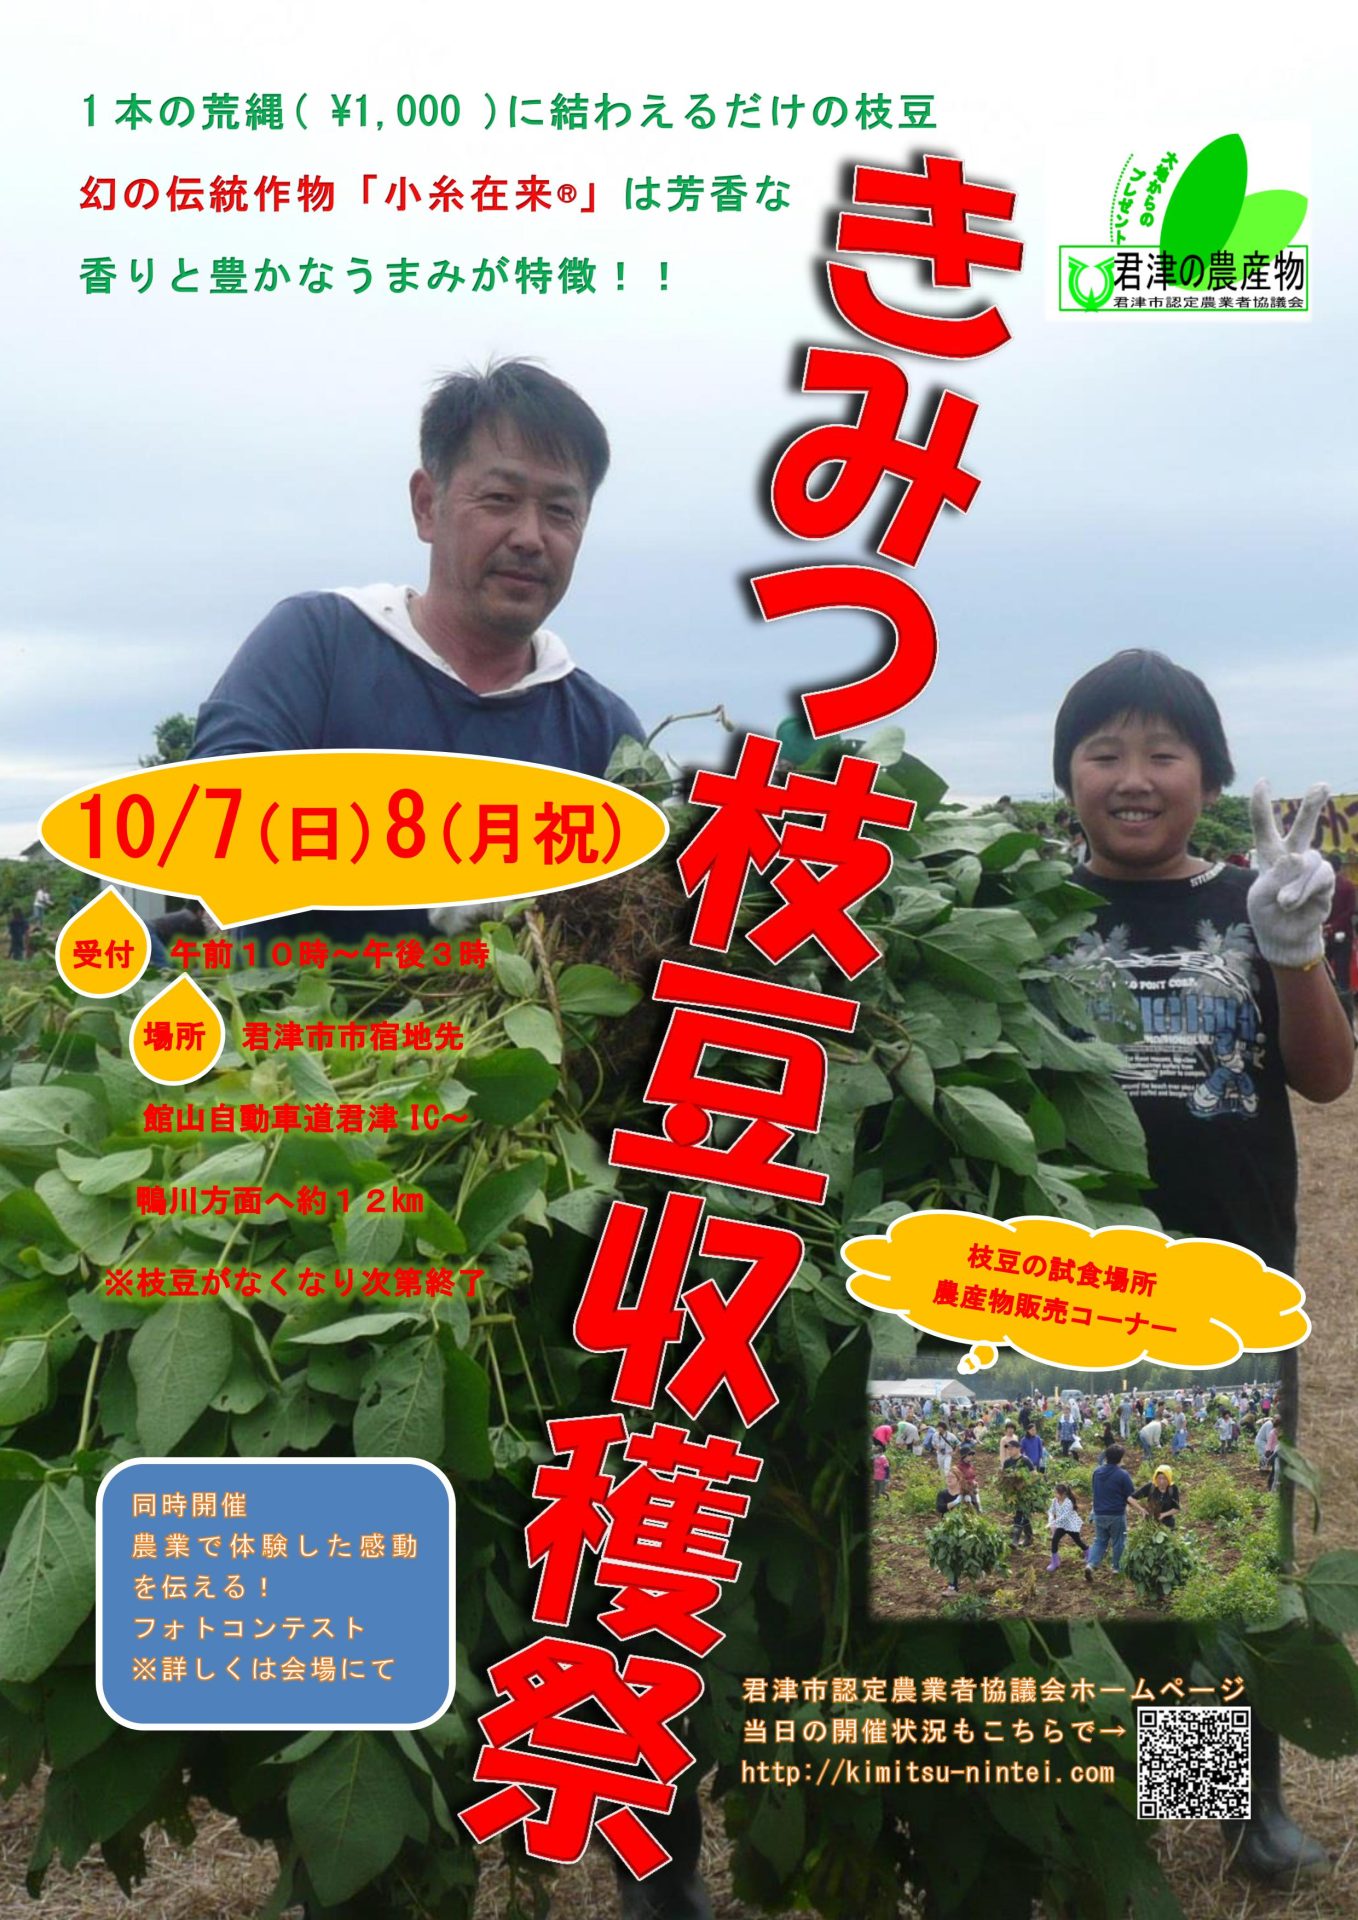 きみつ枝豆収穫祭　10/7(日)・8(祝日) | 移住関連イベント情報